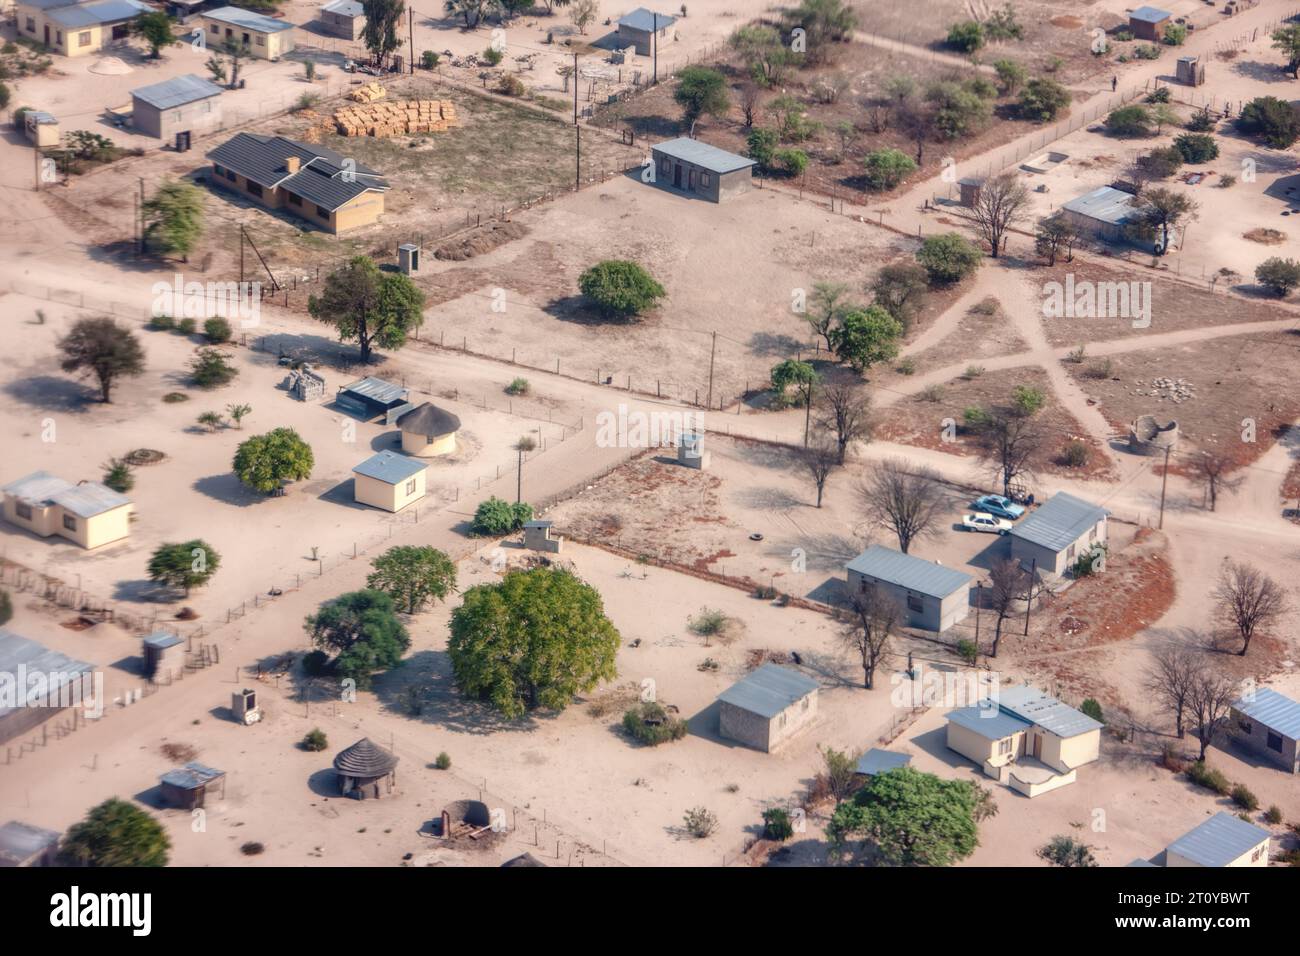 Luftaufnahme des typischen modernen afrikanischen Dorfes in botswana, mit staubigen unbefestigten Straßen und kubischen Gebäuden Stockfoto